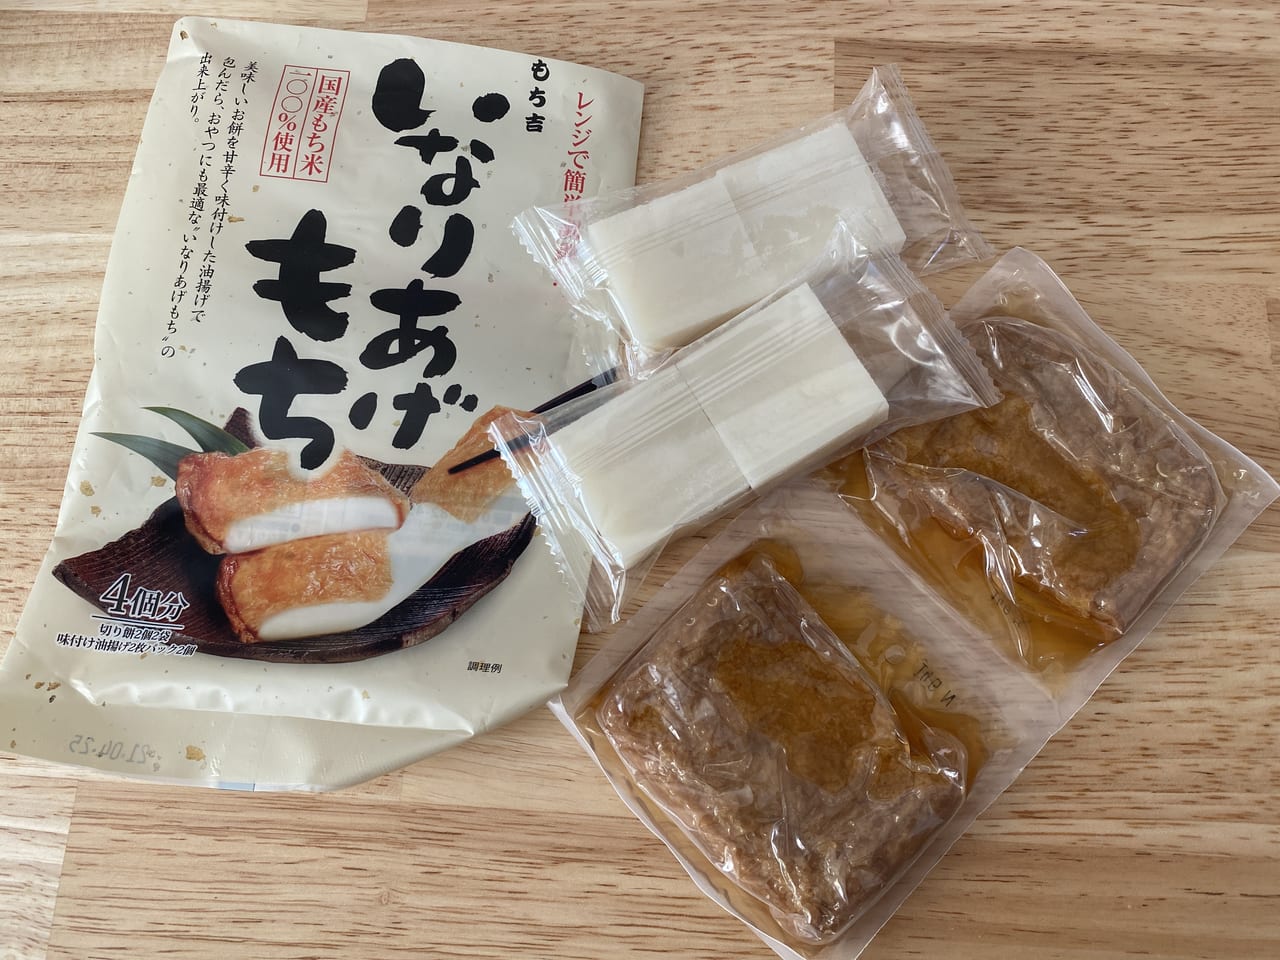 神戸市西区 美味しすぎる もち吉 のレンジでチンして食べる 話題の売れ筋商品を紹介します 号外net 神戸市西区